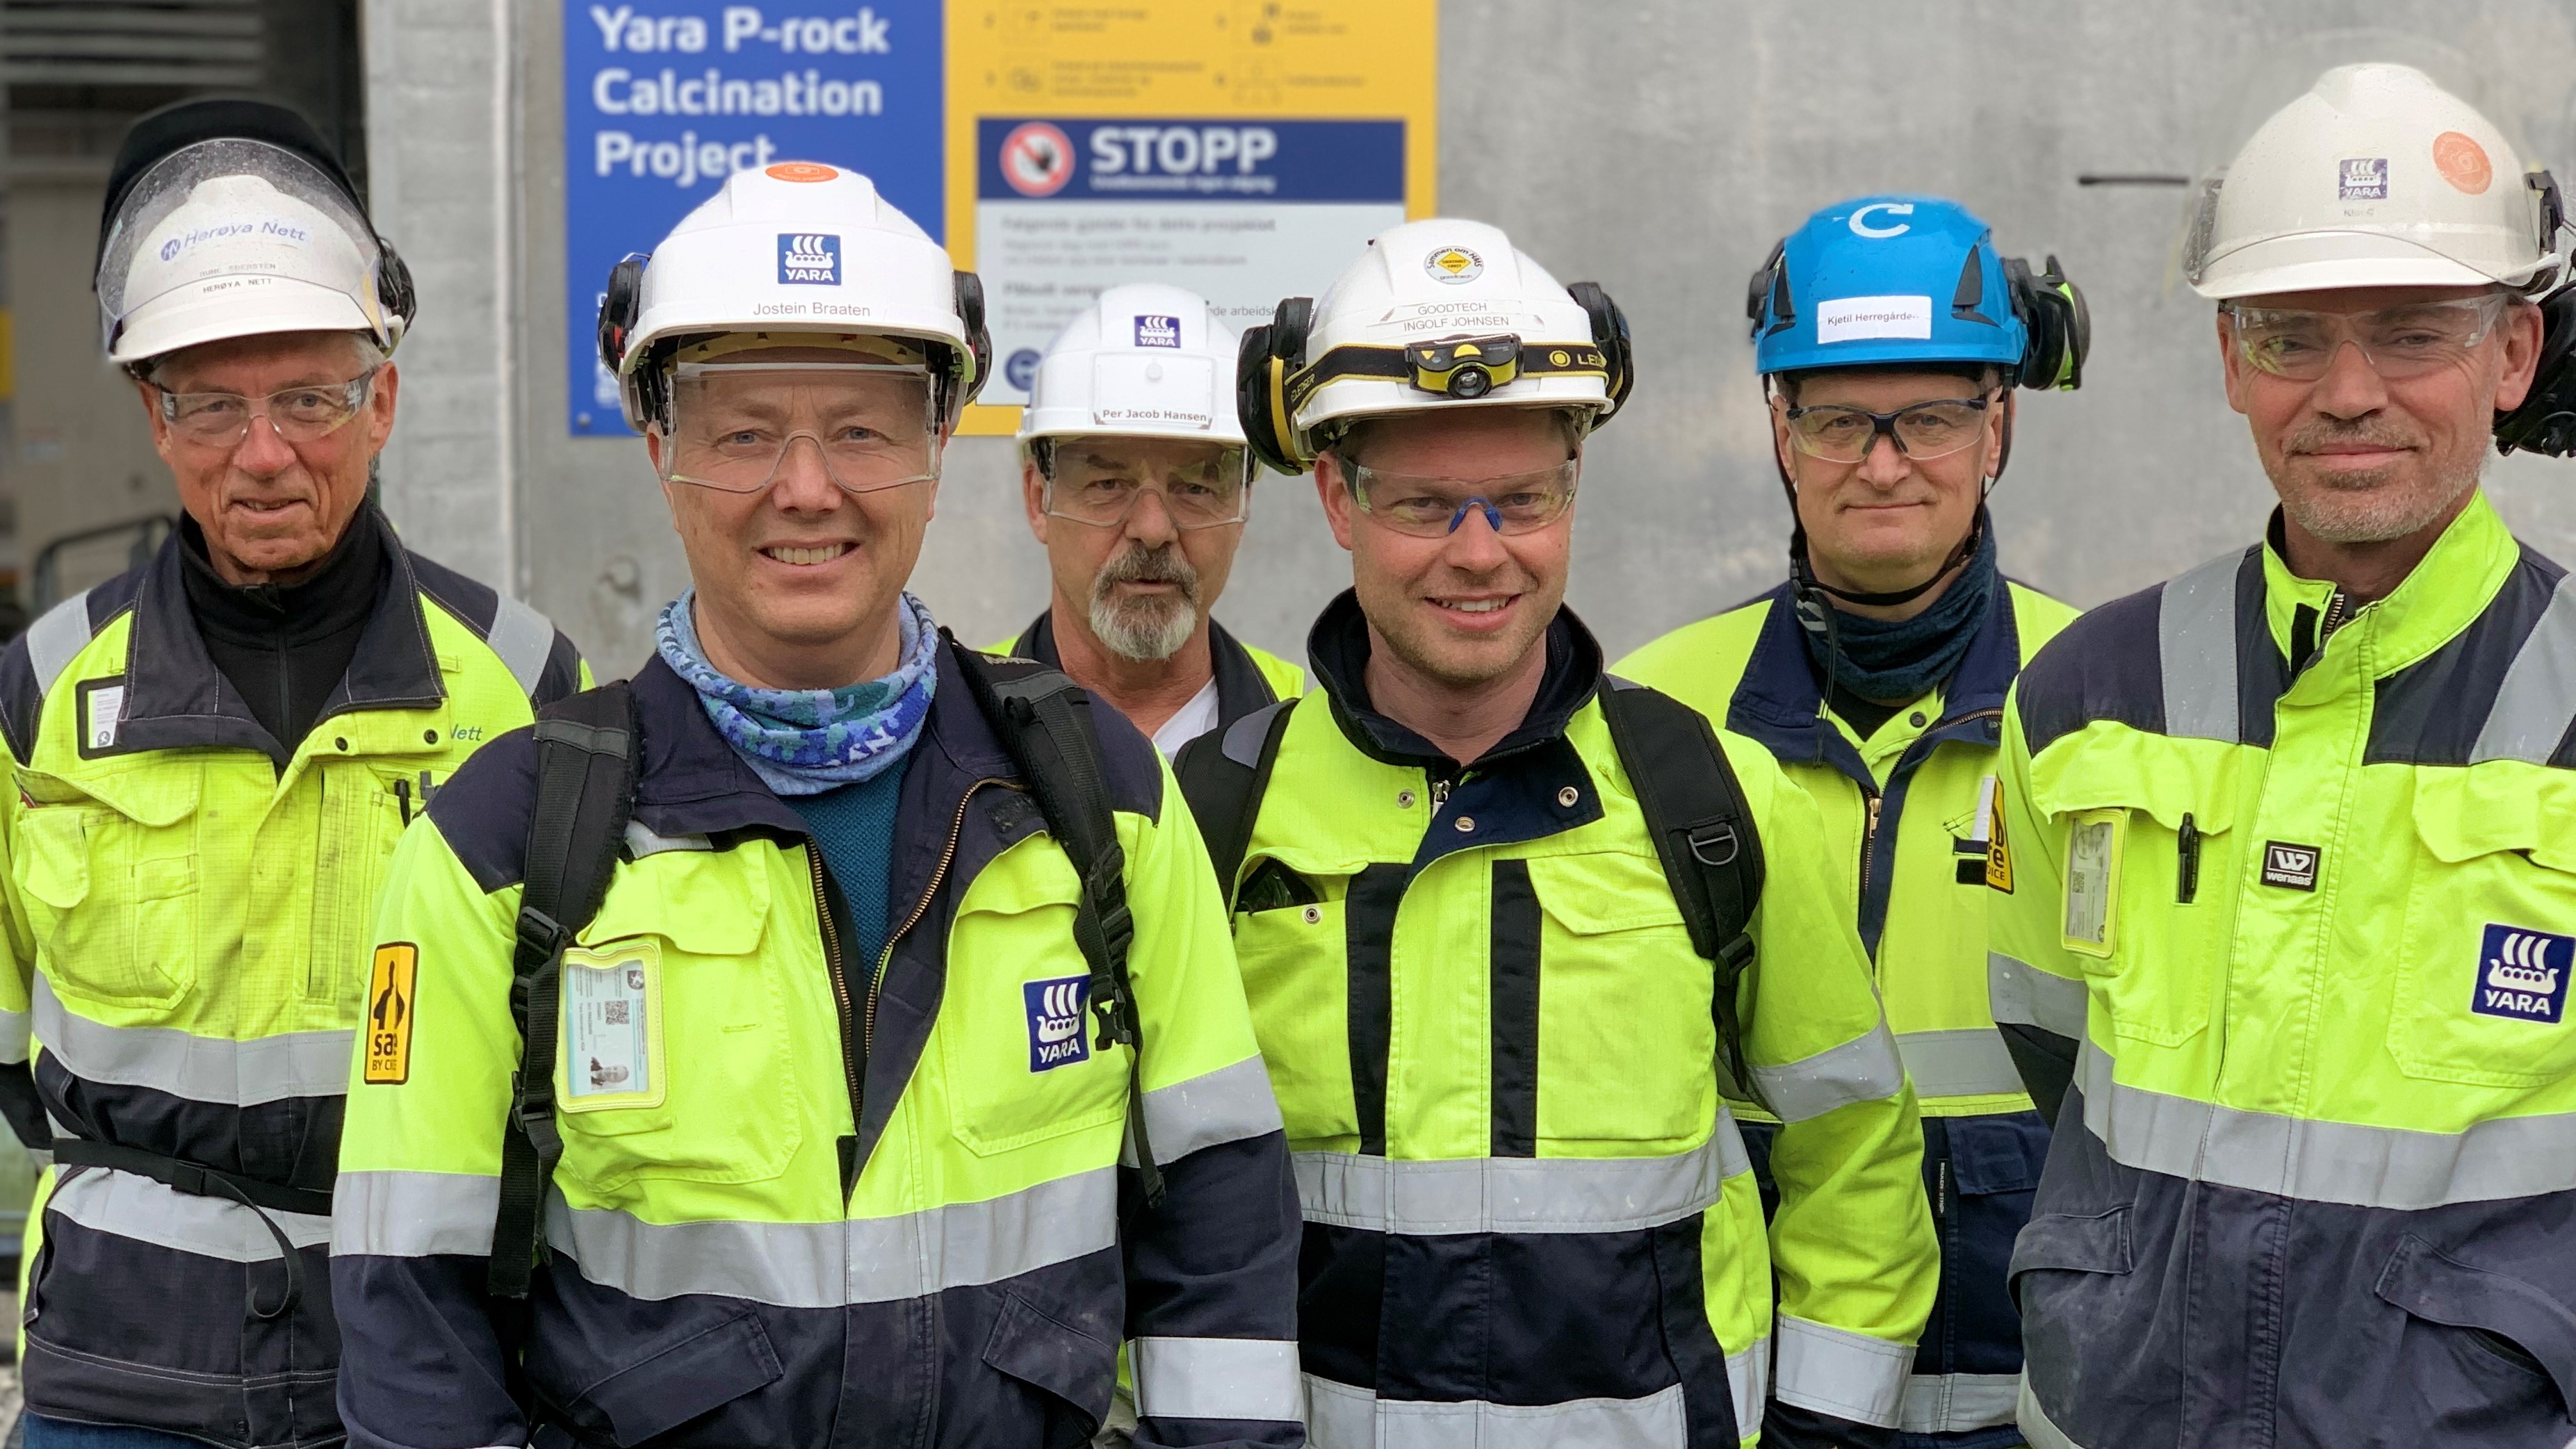 seks menn står sammen, gule og blå arbeidsklær, hjelmer, poserer inntil en betongvegg